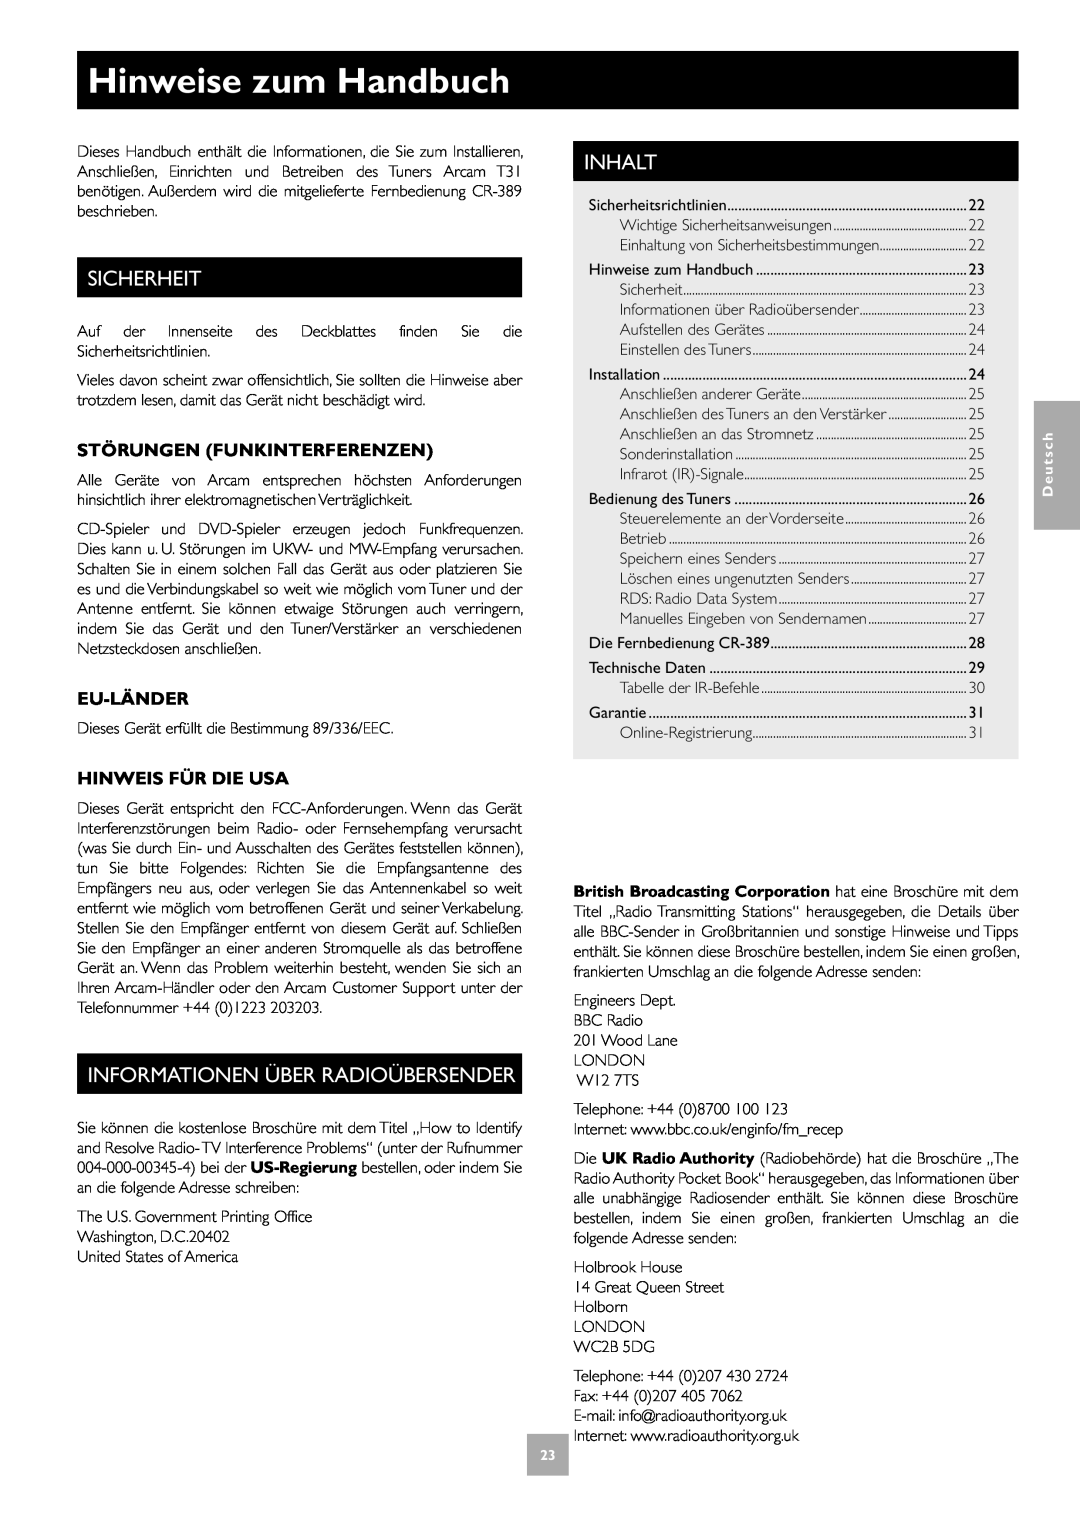 Arcam T31 manual Hinweise zum Handbuch, Sicherheit, Informationen Über Radioübersender, Inhalt, Störungen Funkinterferenzen 